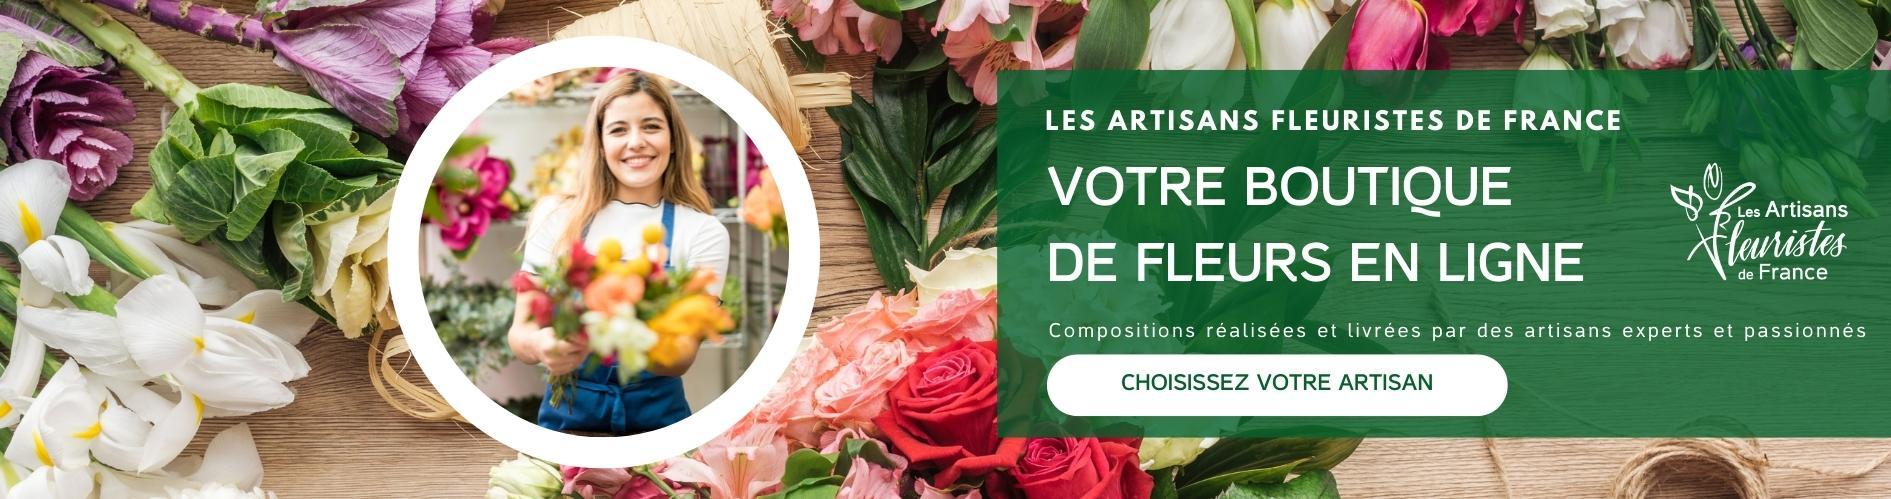 Les Artisans Fleuristes De France, votre boutique de fleurs en ligne